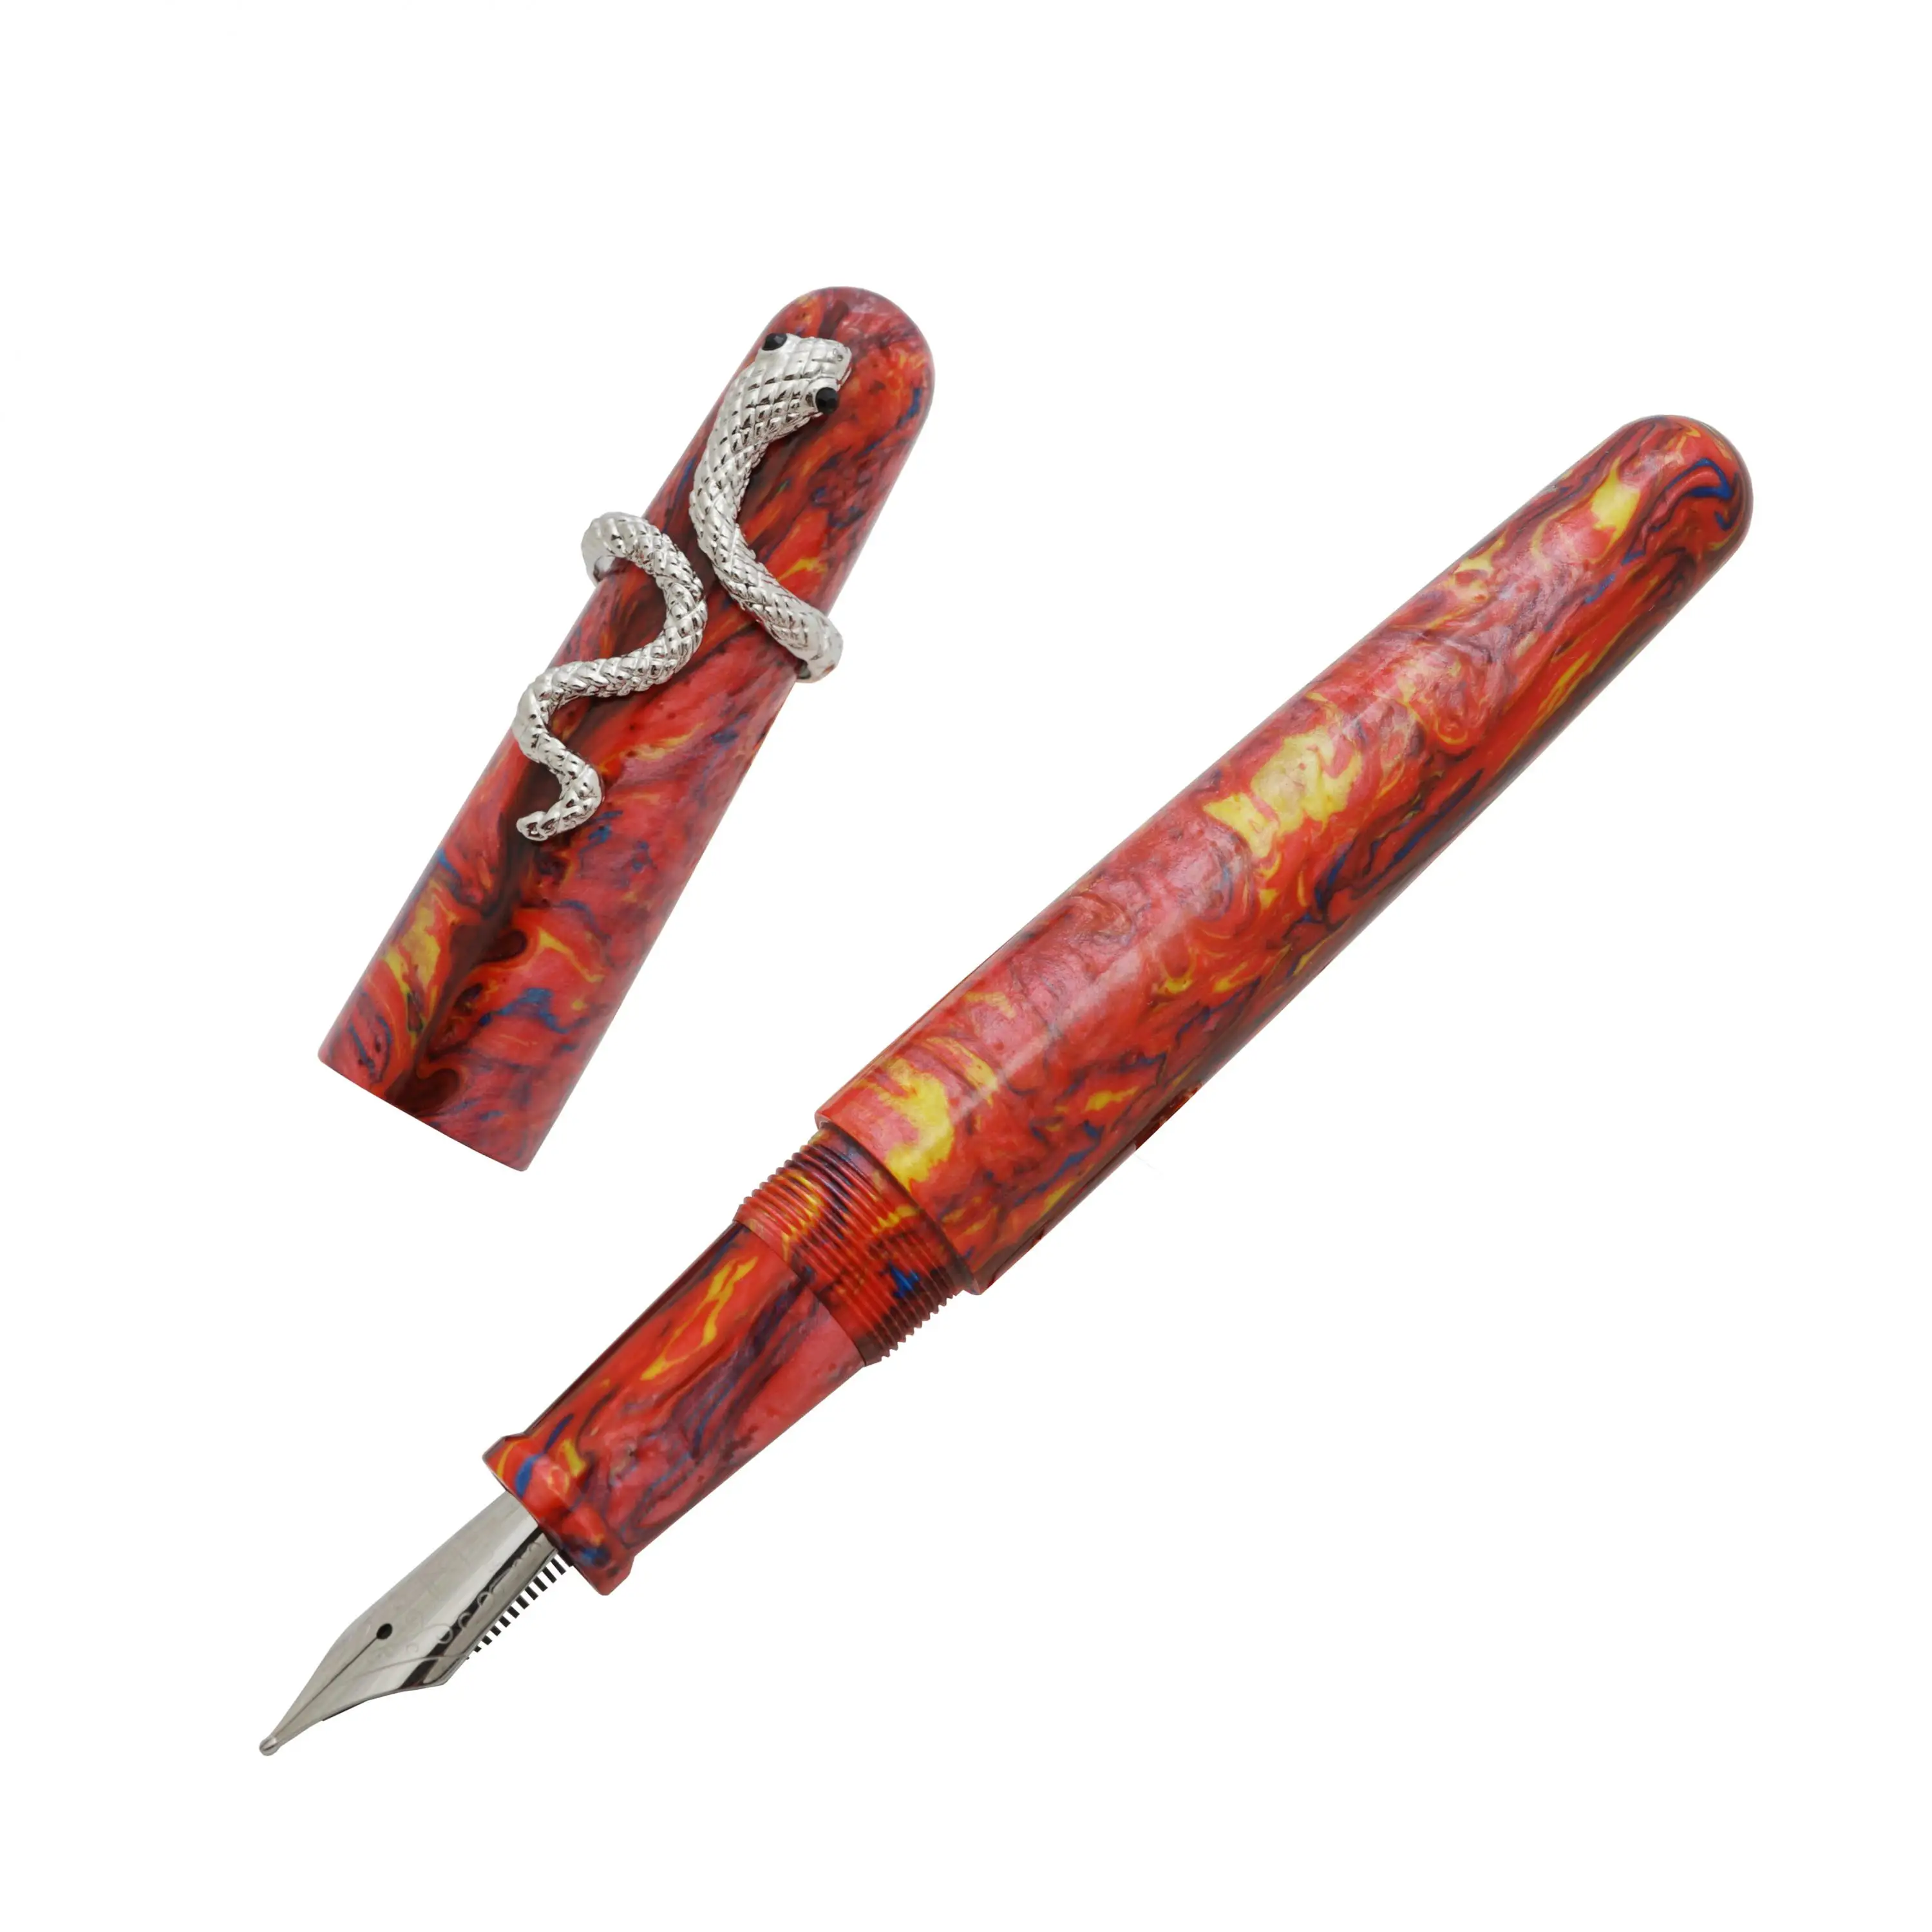 

Перьевая ручка Fuliwen 017, акриловая каучуковая ручка большого размера с уникальным серебряным змеиным кольцом, с наконечником Ef/f/m, роскошный п...